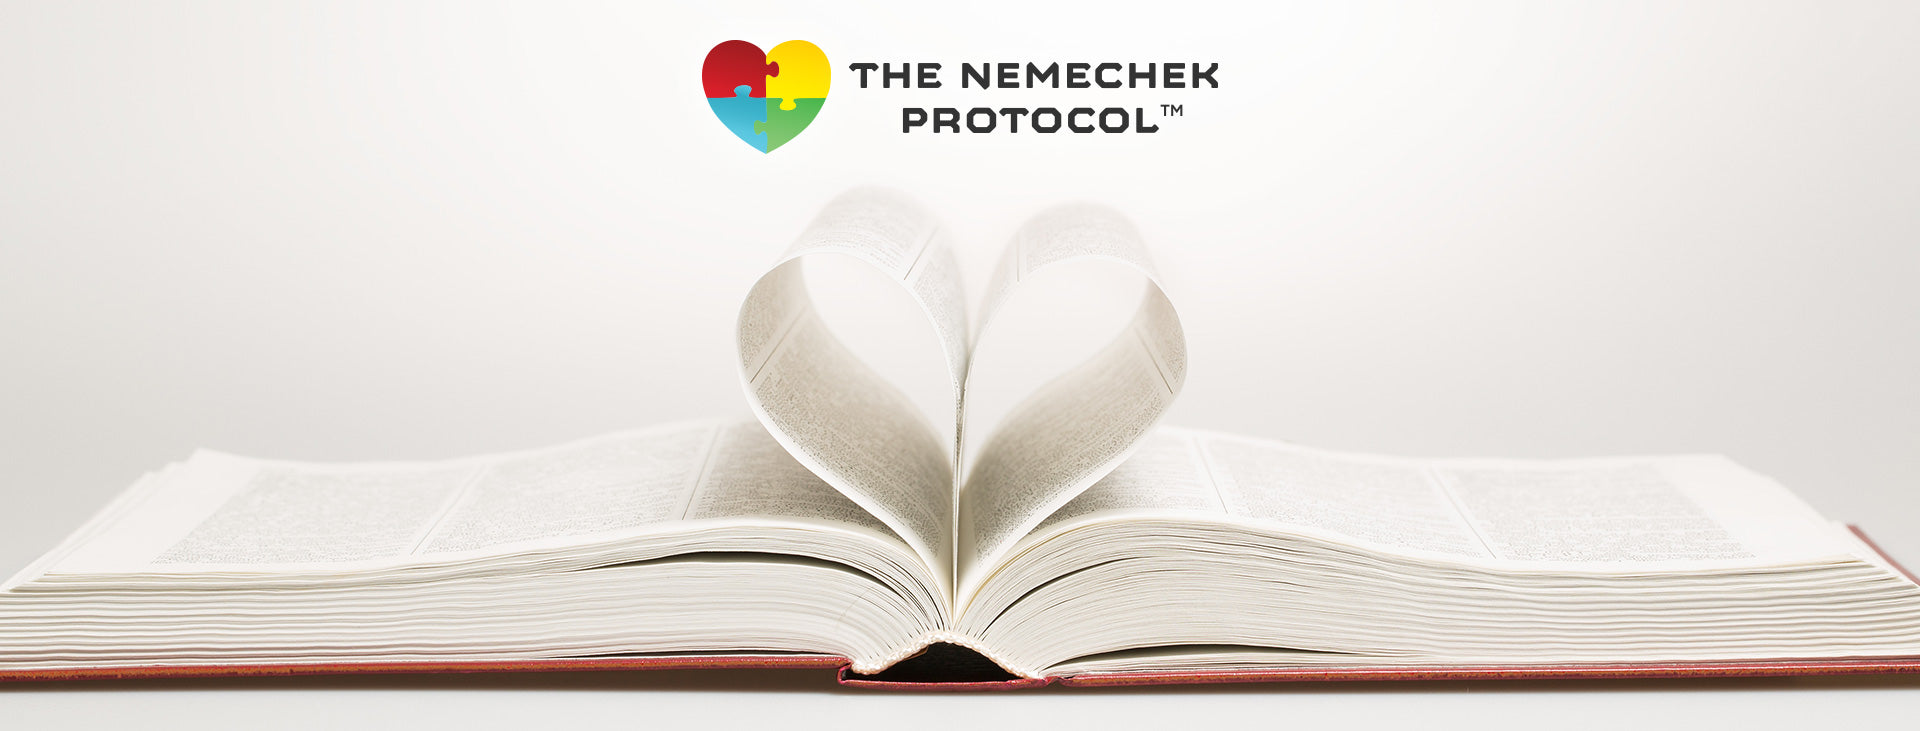 Nemechek Protocol Book Reviews